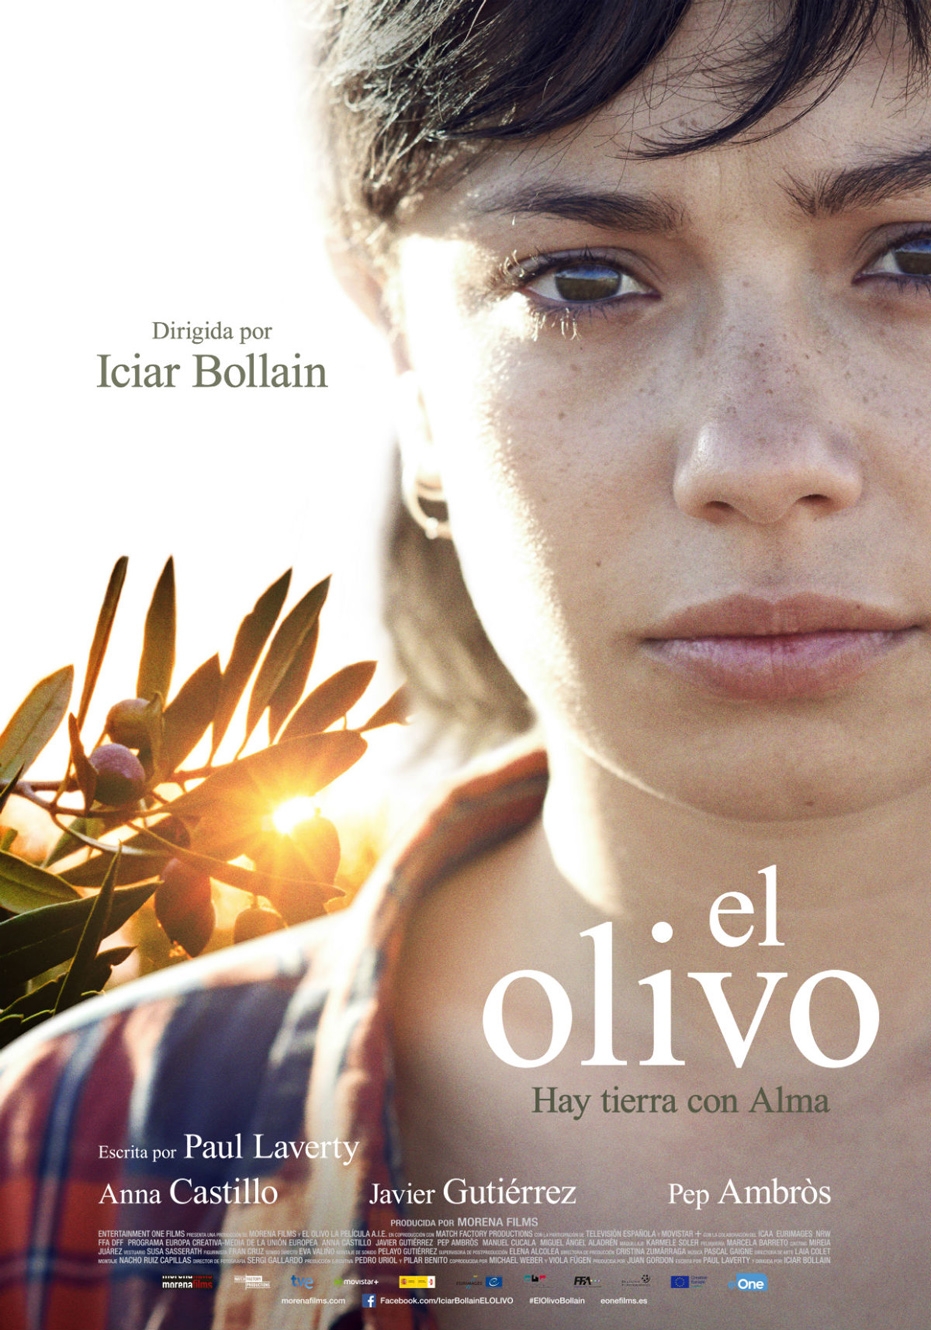 Ciclo de Cine Español: proyección de El olivo, de Icíar Bollaín